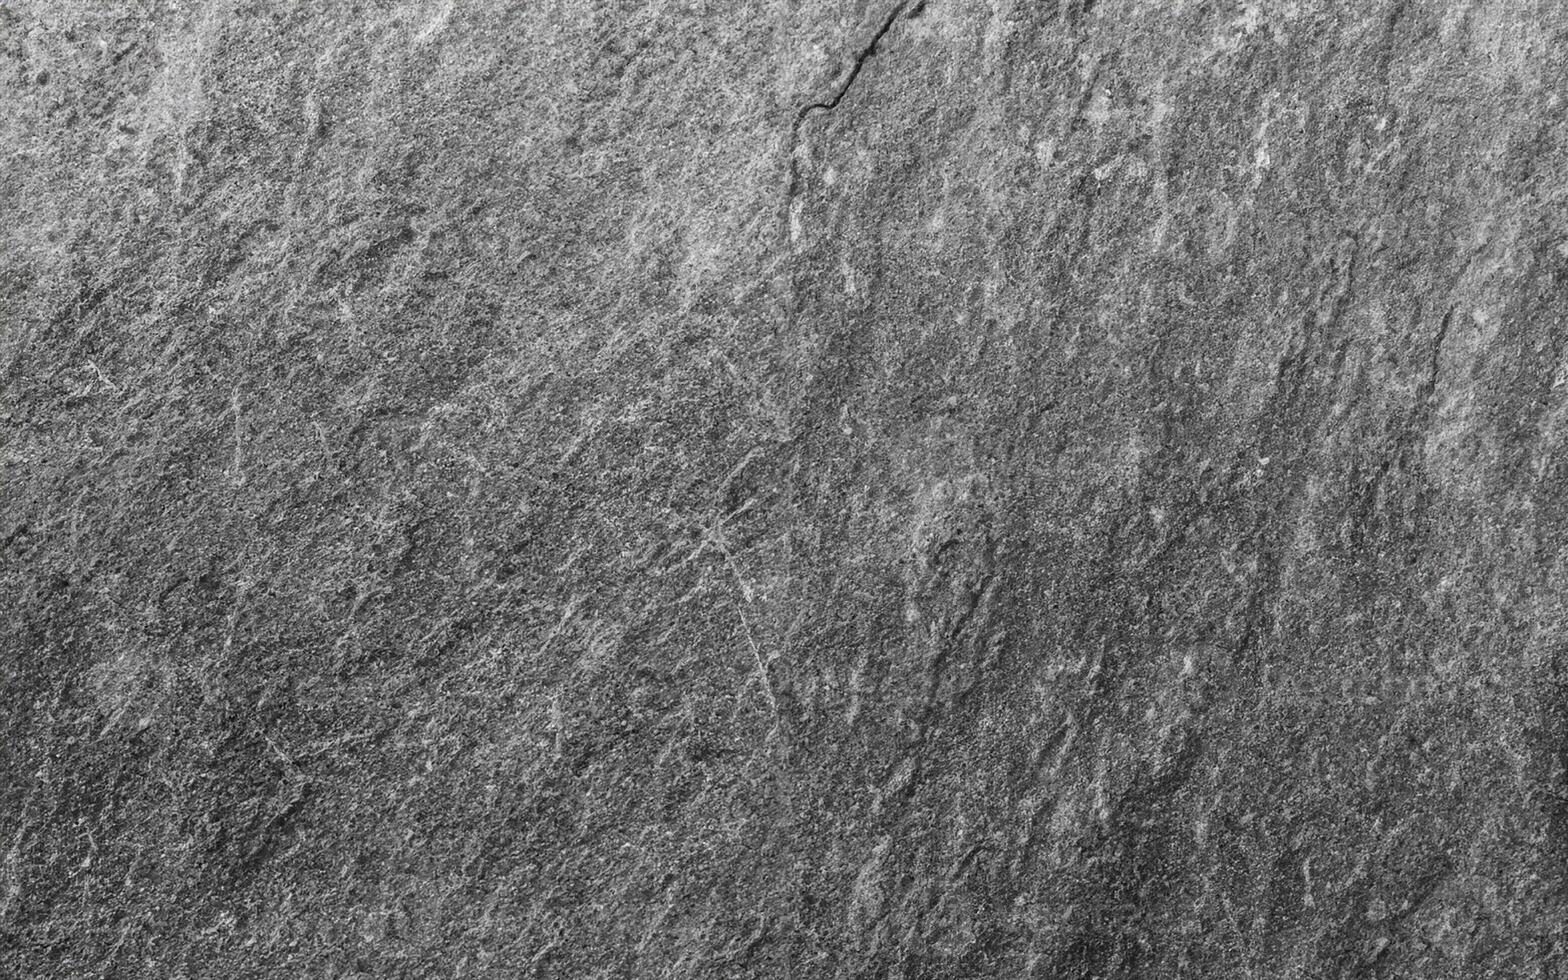 noir pierre texture surface photo